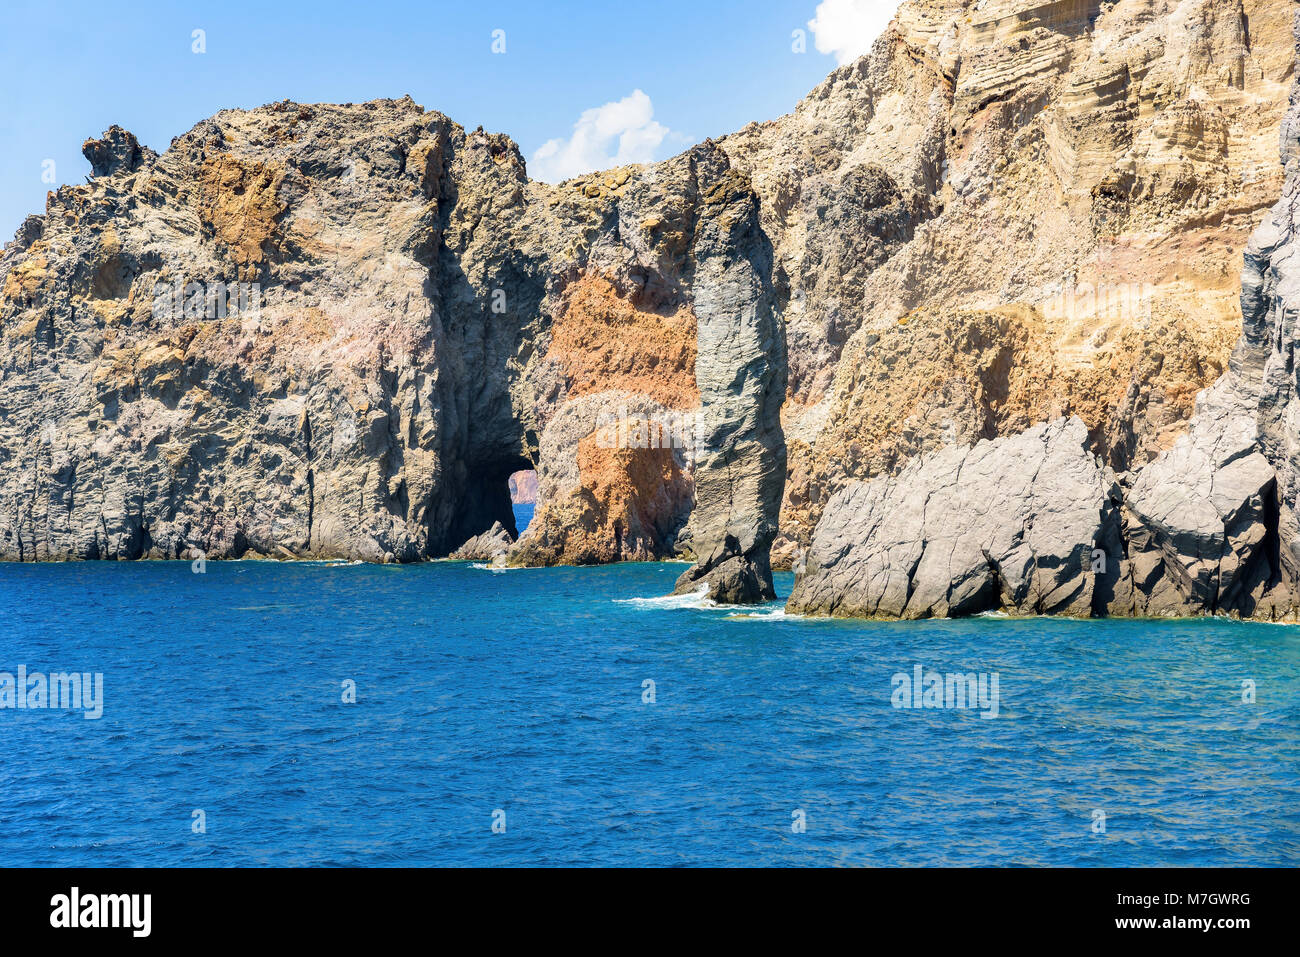 Les formations rocheuses à la côte de l'île de Lipari, iles Eoliennes, Italie Banque D'Images